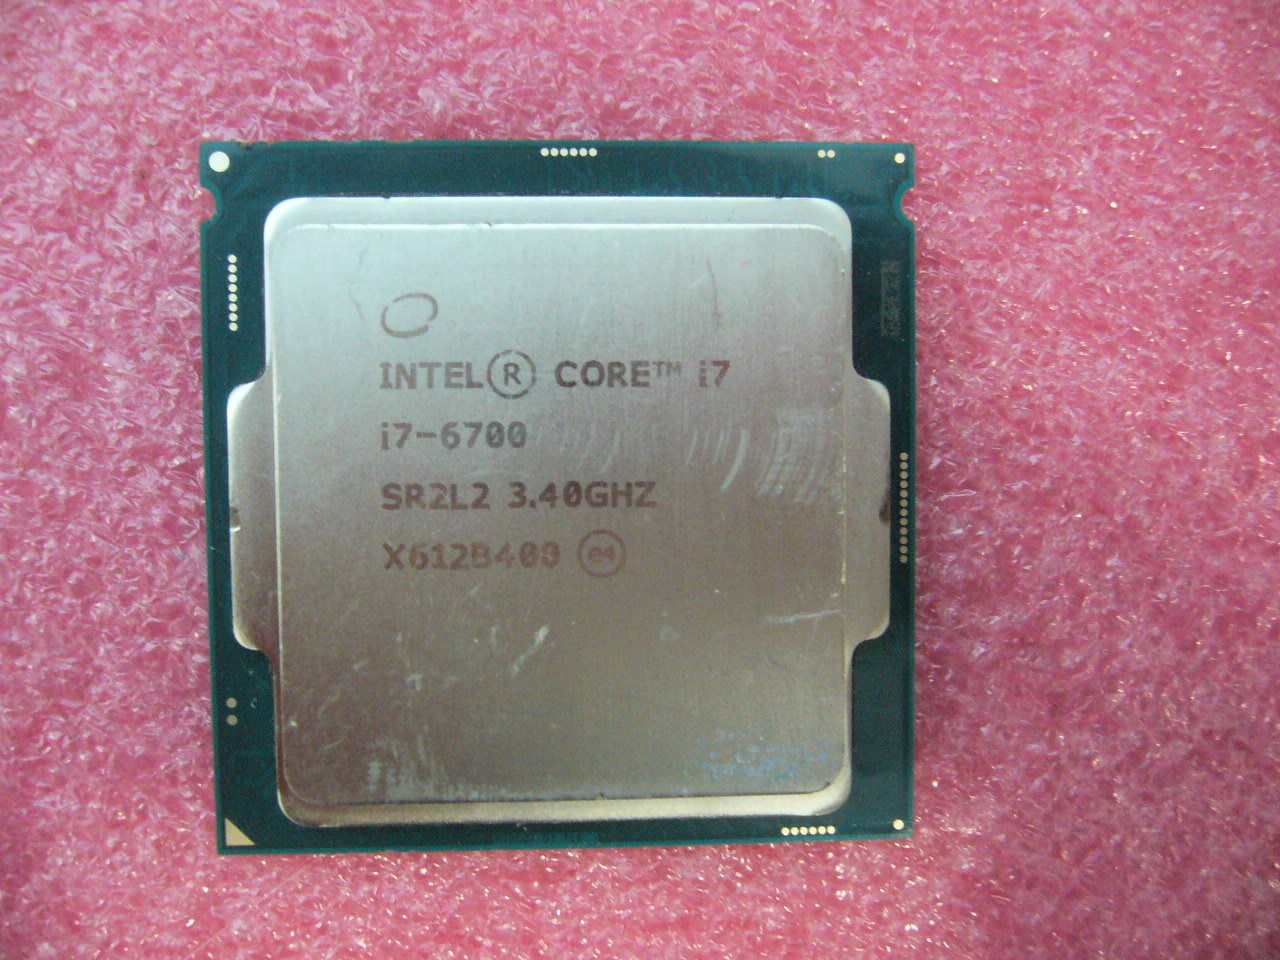 QTY 1x Intel CPU i7-6700 Quad-Cores 3.40Ghz 8MB LGA1151 SR2L2 SR2BT NOT WORKING